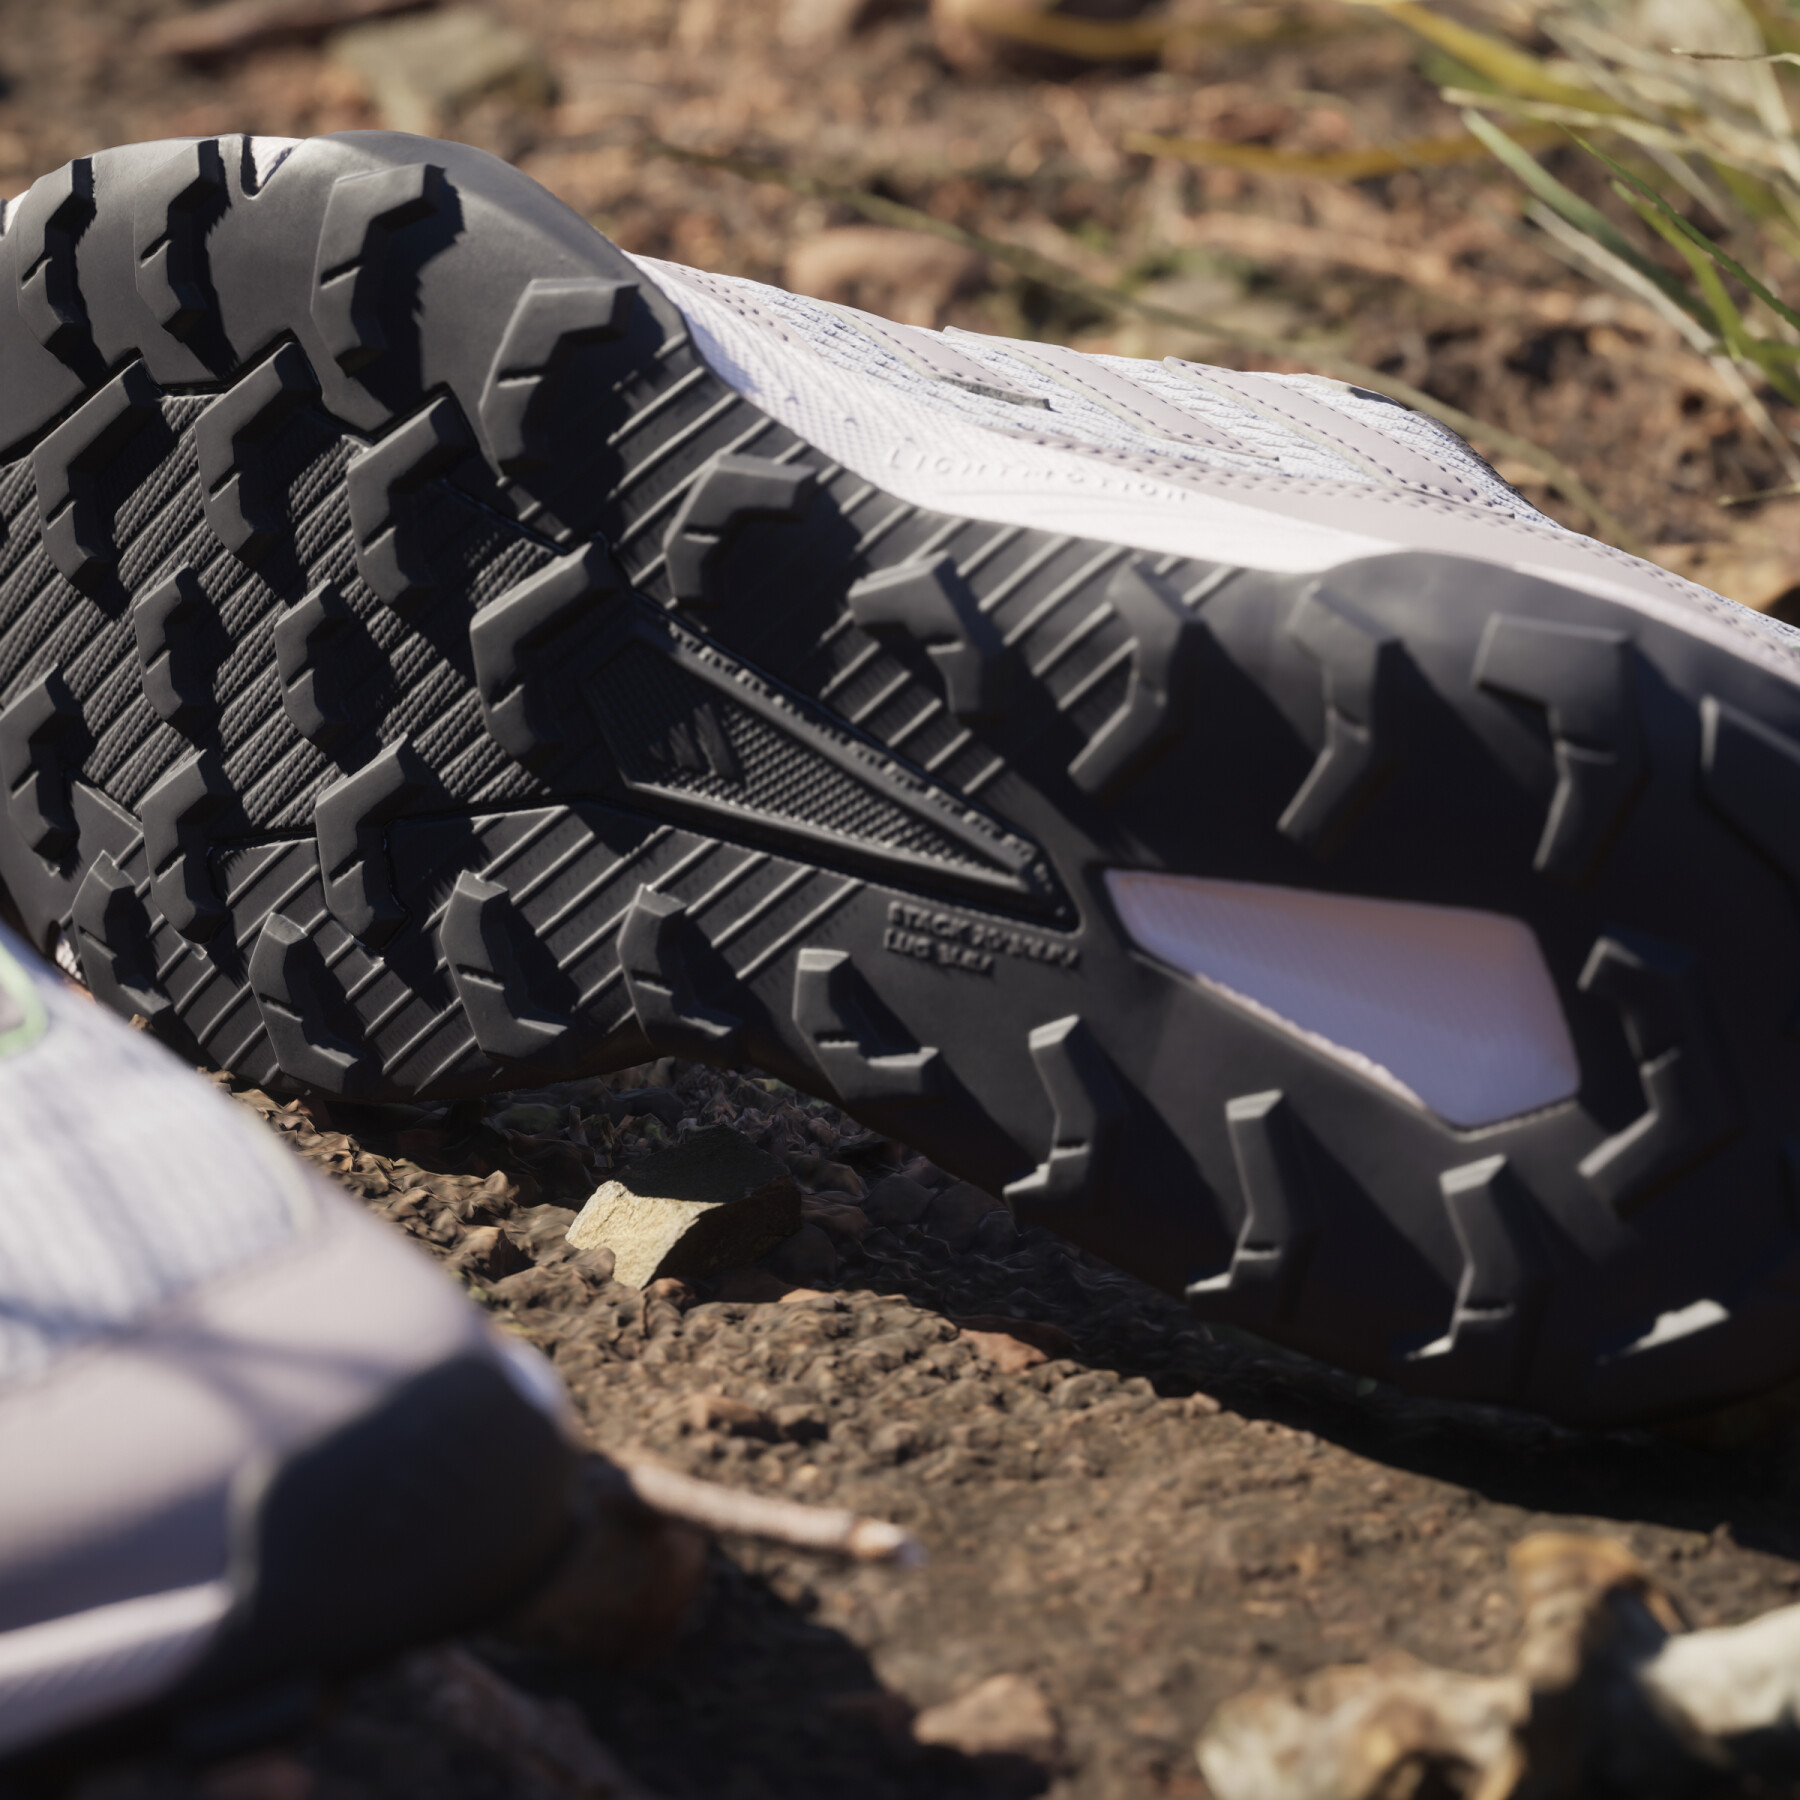 Trailrunning-Schuhe für Frauen adidas Tracefinder